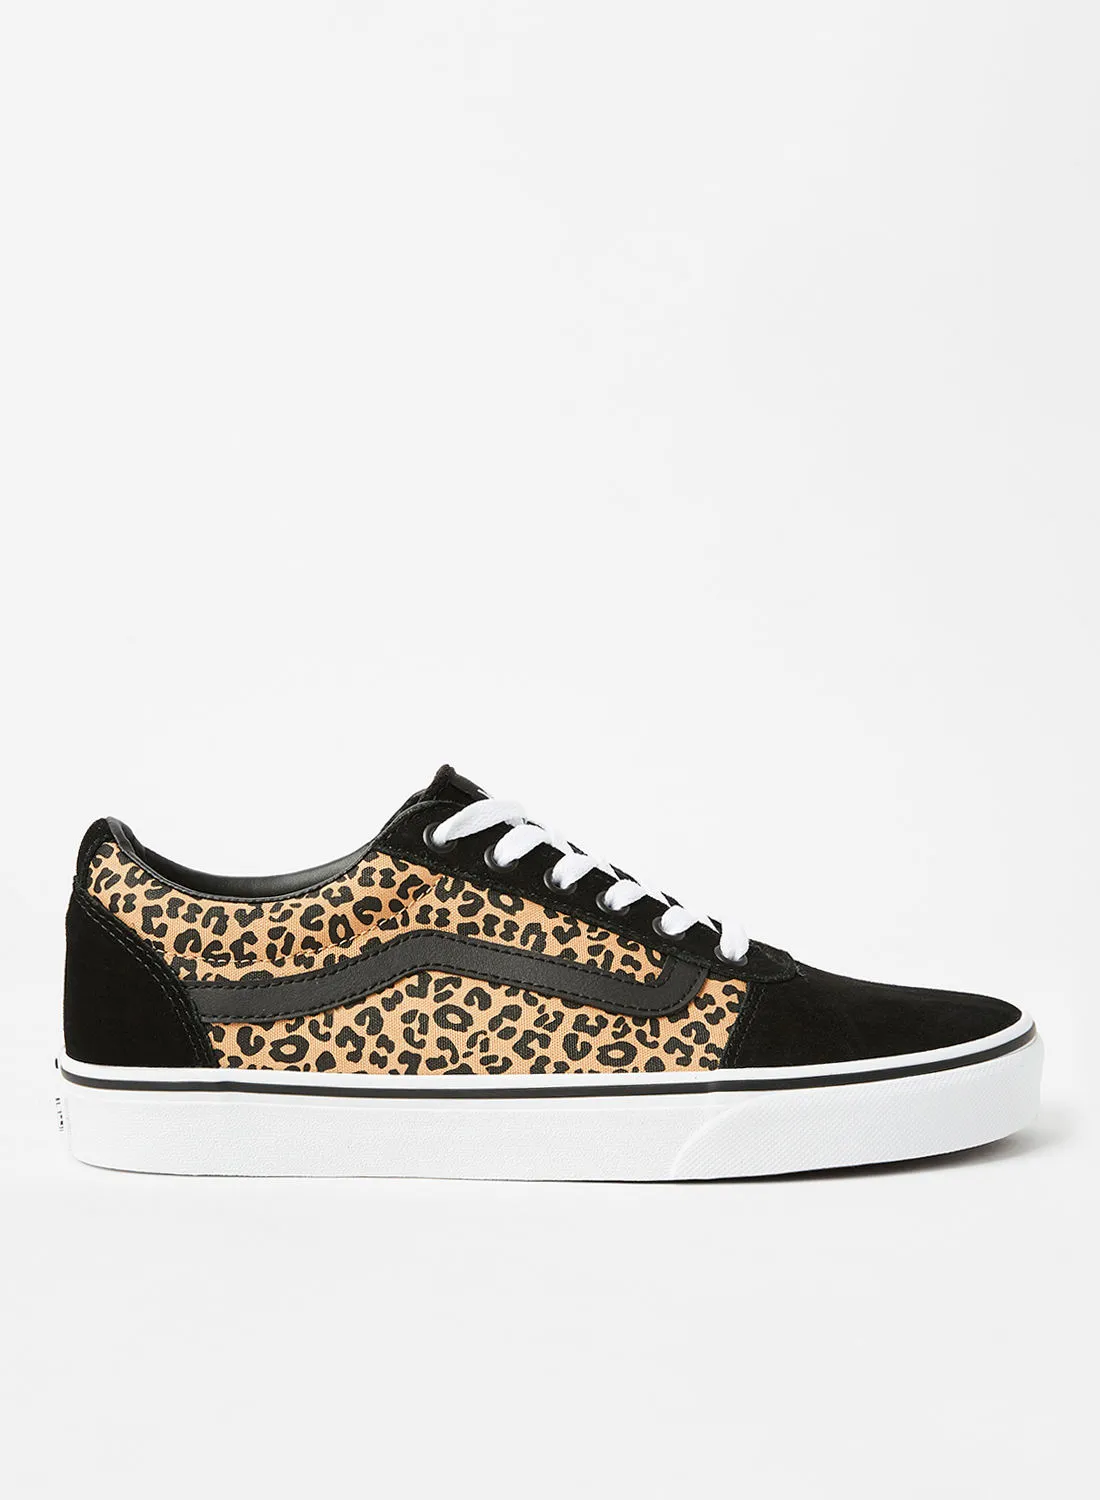 VANS Ward Leopard Print Sneakers Black/Brown